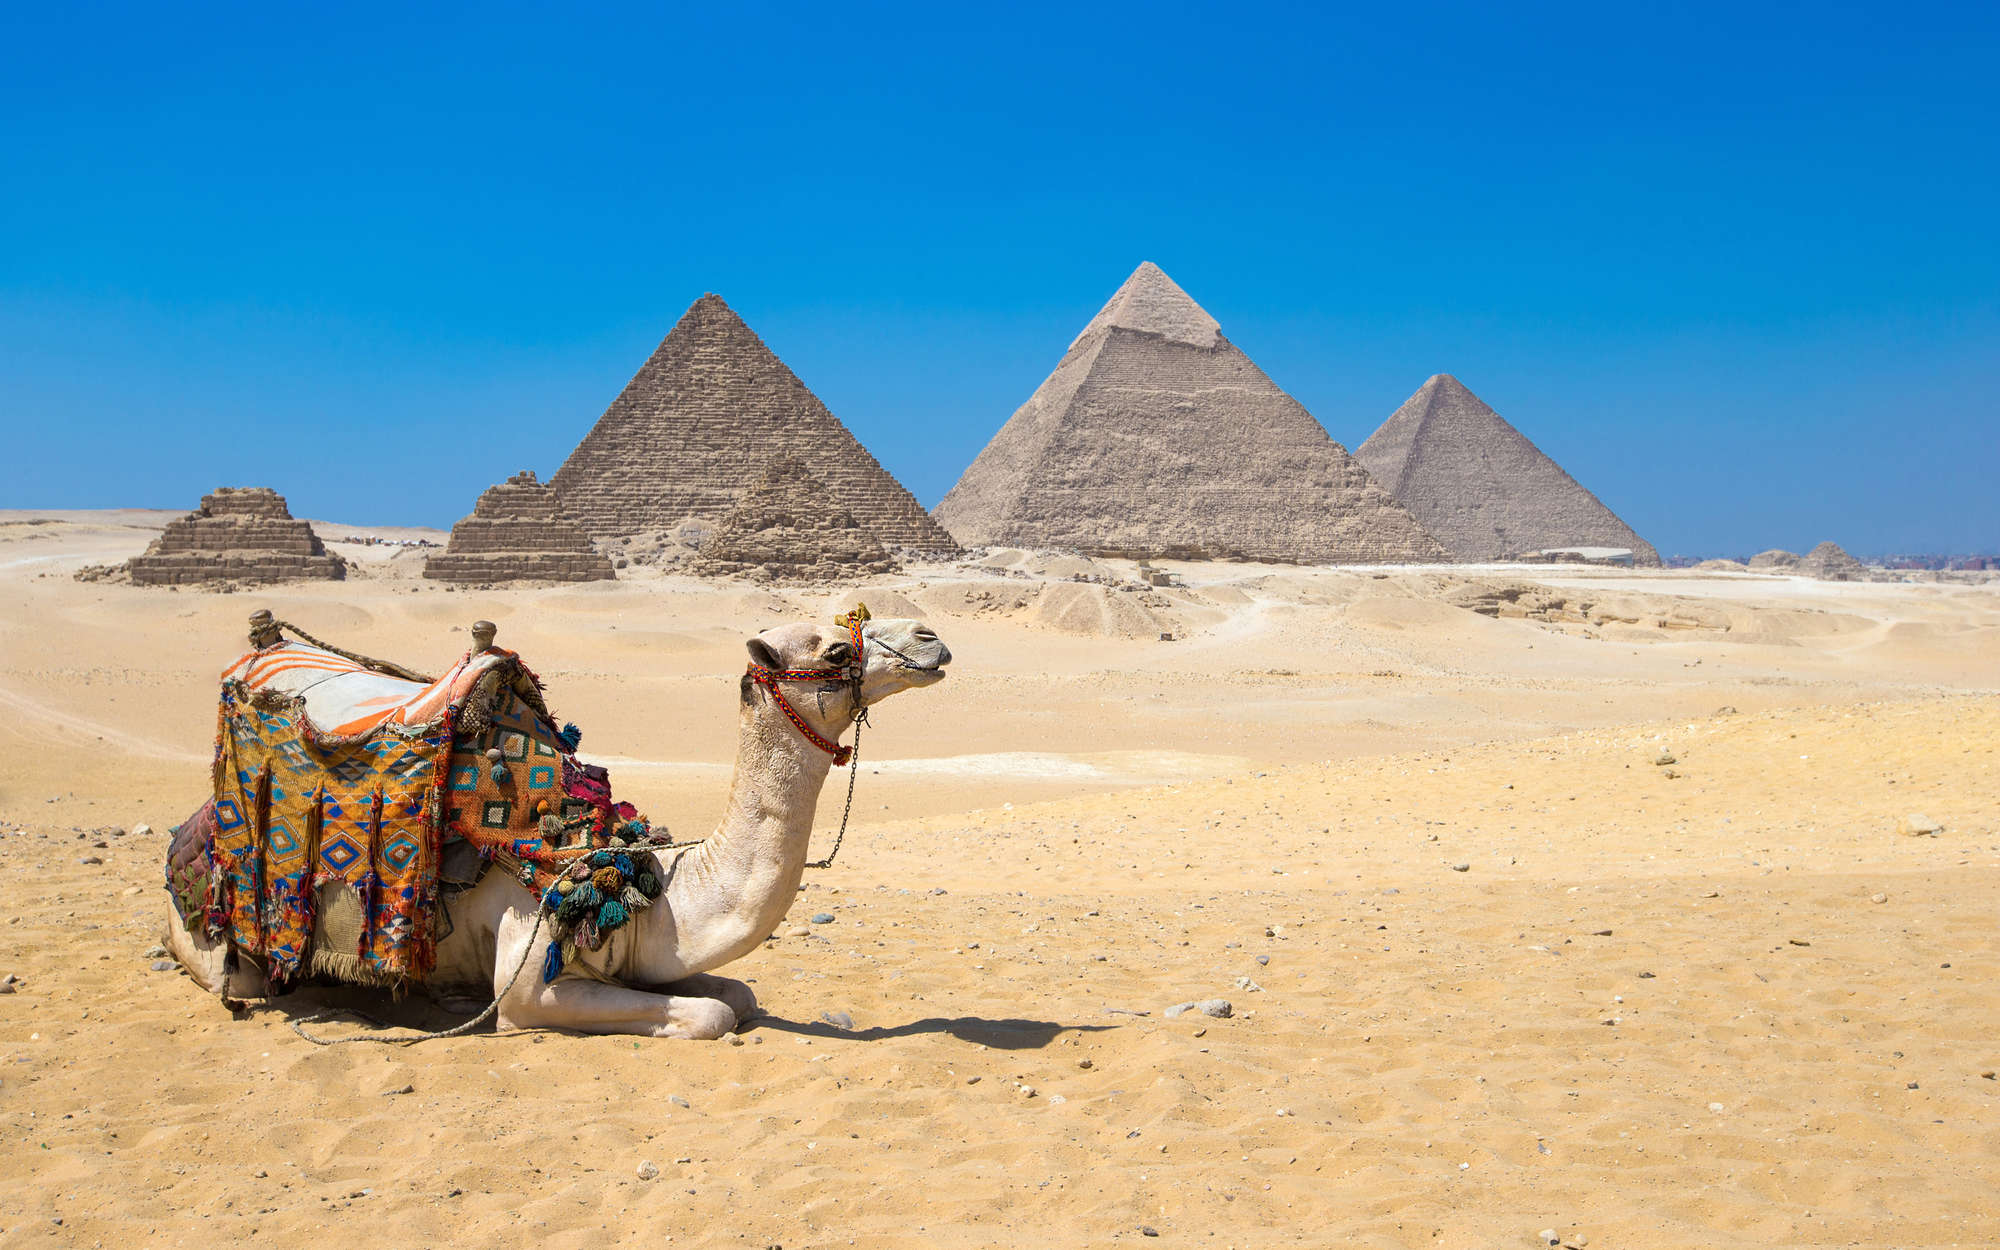             Fototapete Pyramiden von Gizeh mit Kamel – Perlmutt Glattvlies
        